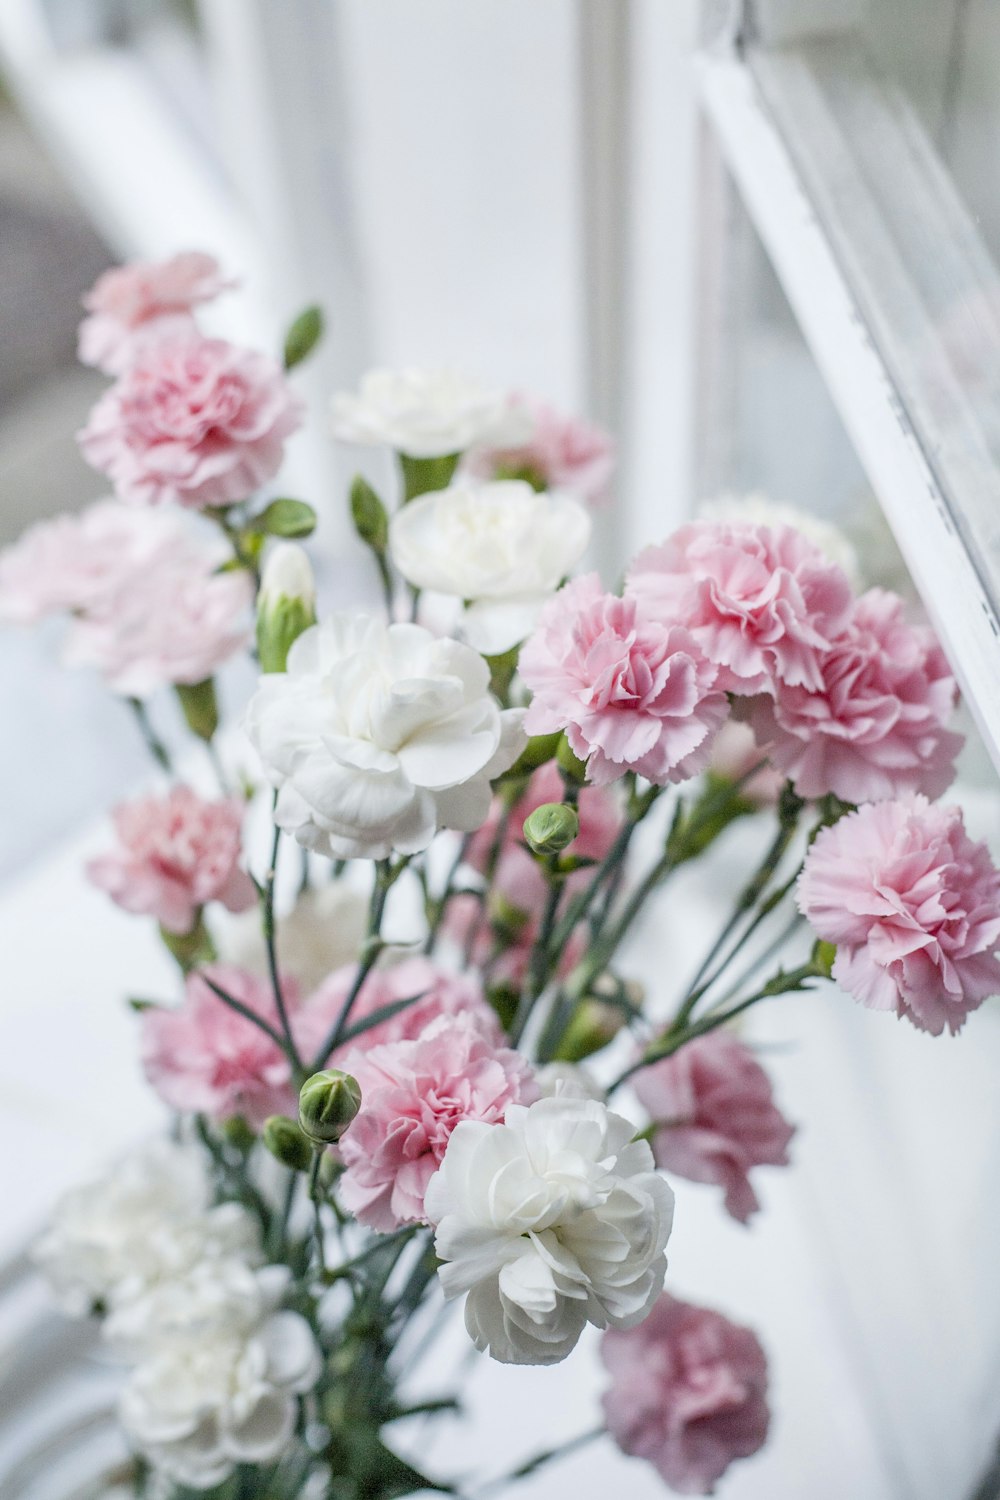 fiori rosa e bianchi con lente decentrabile